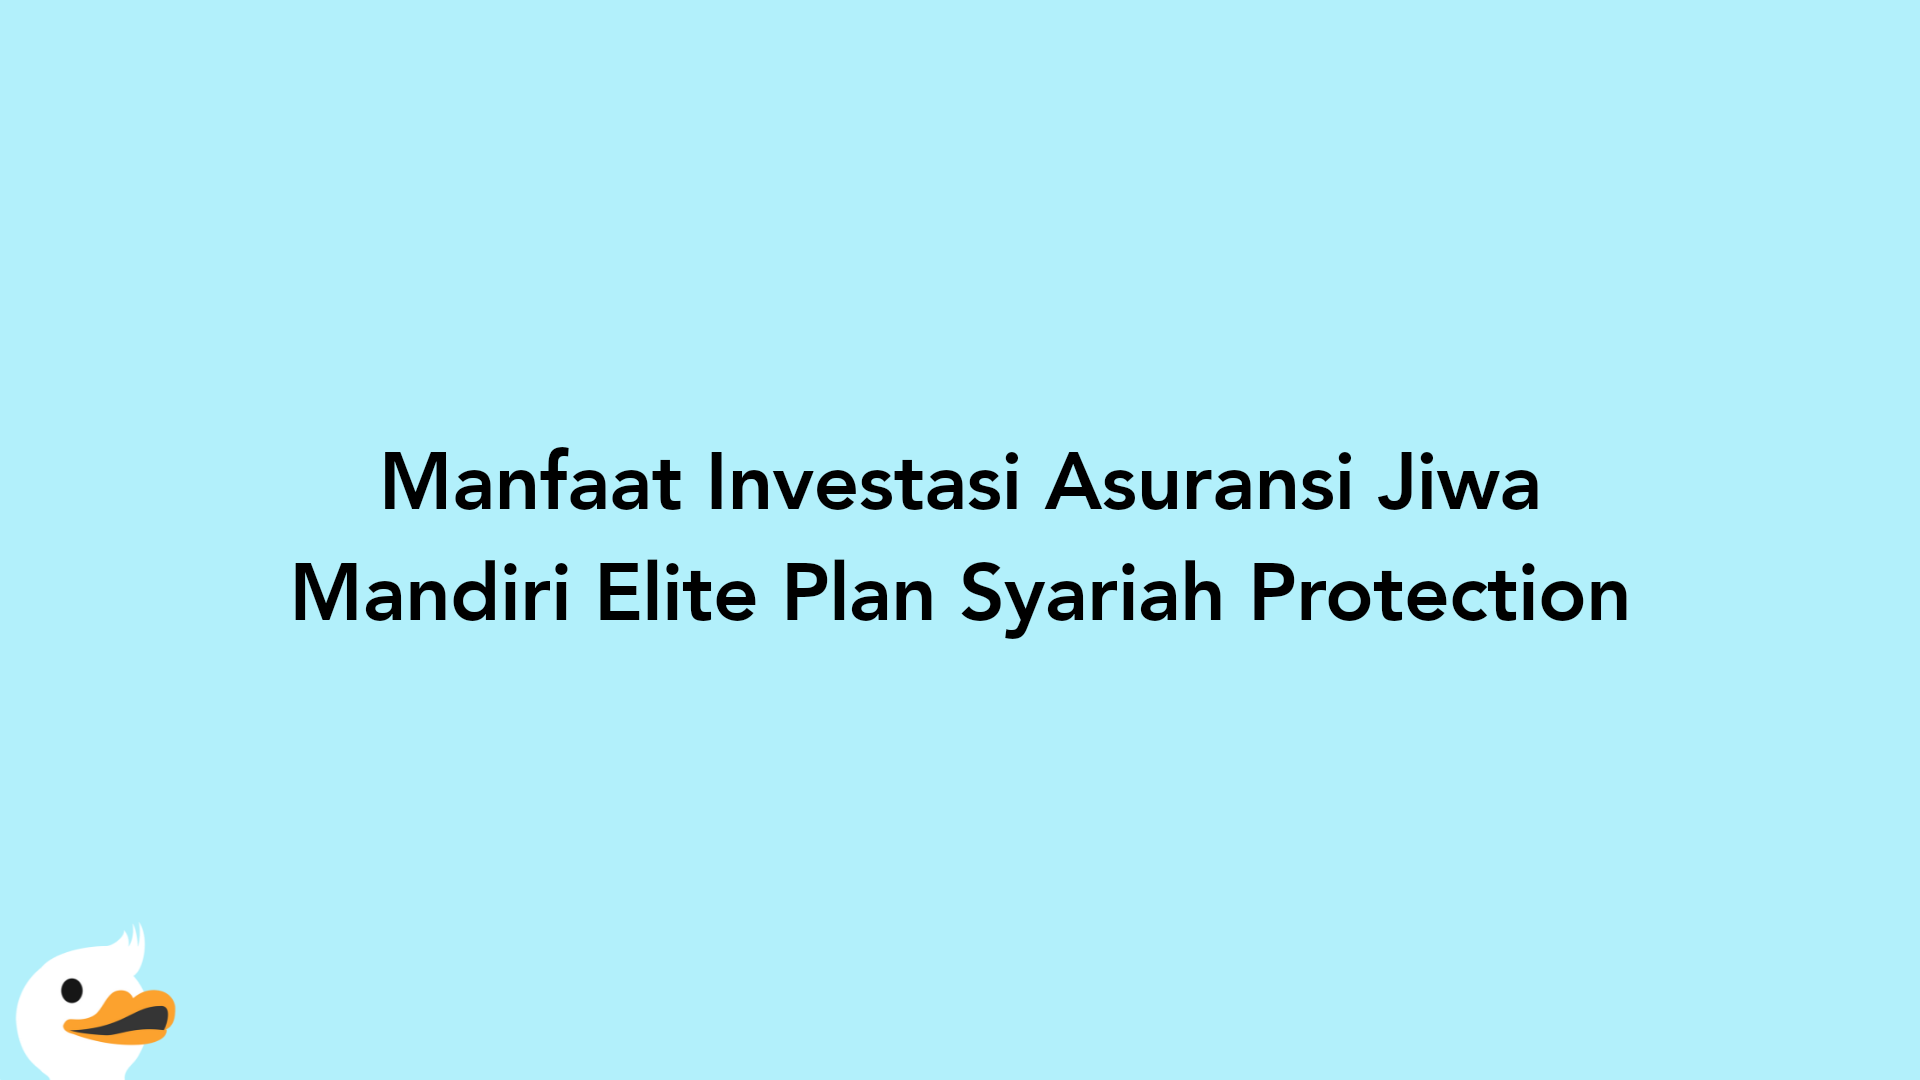 Manfaat Investasi Asuransi Jiwa Mandiri Elite Plan Syariah Protection